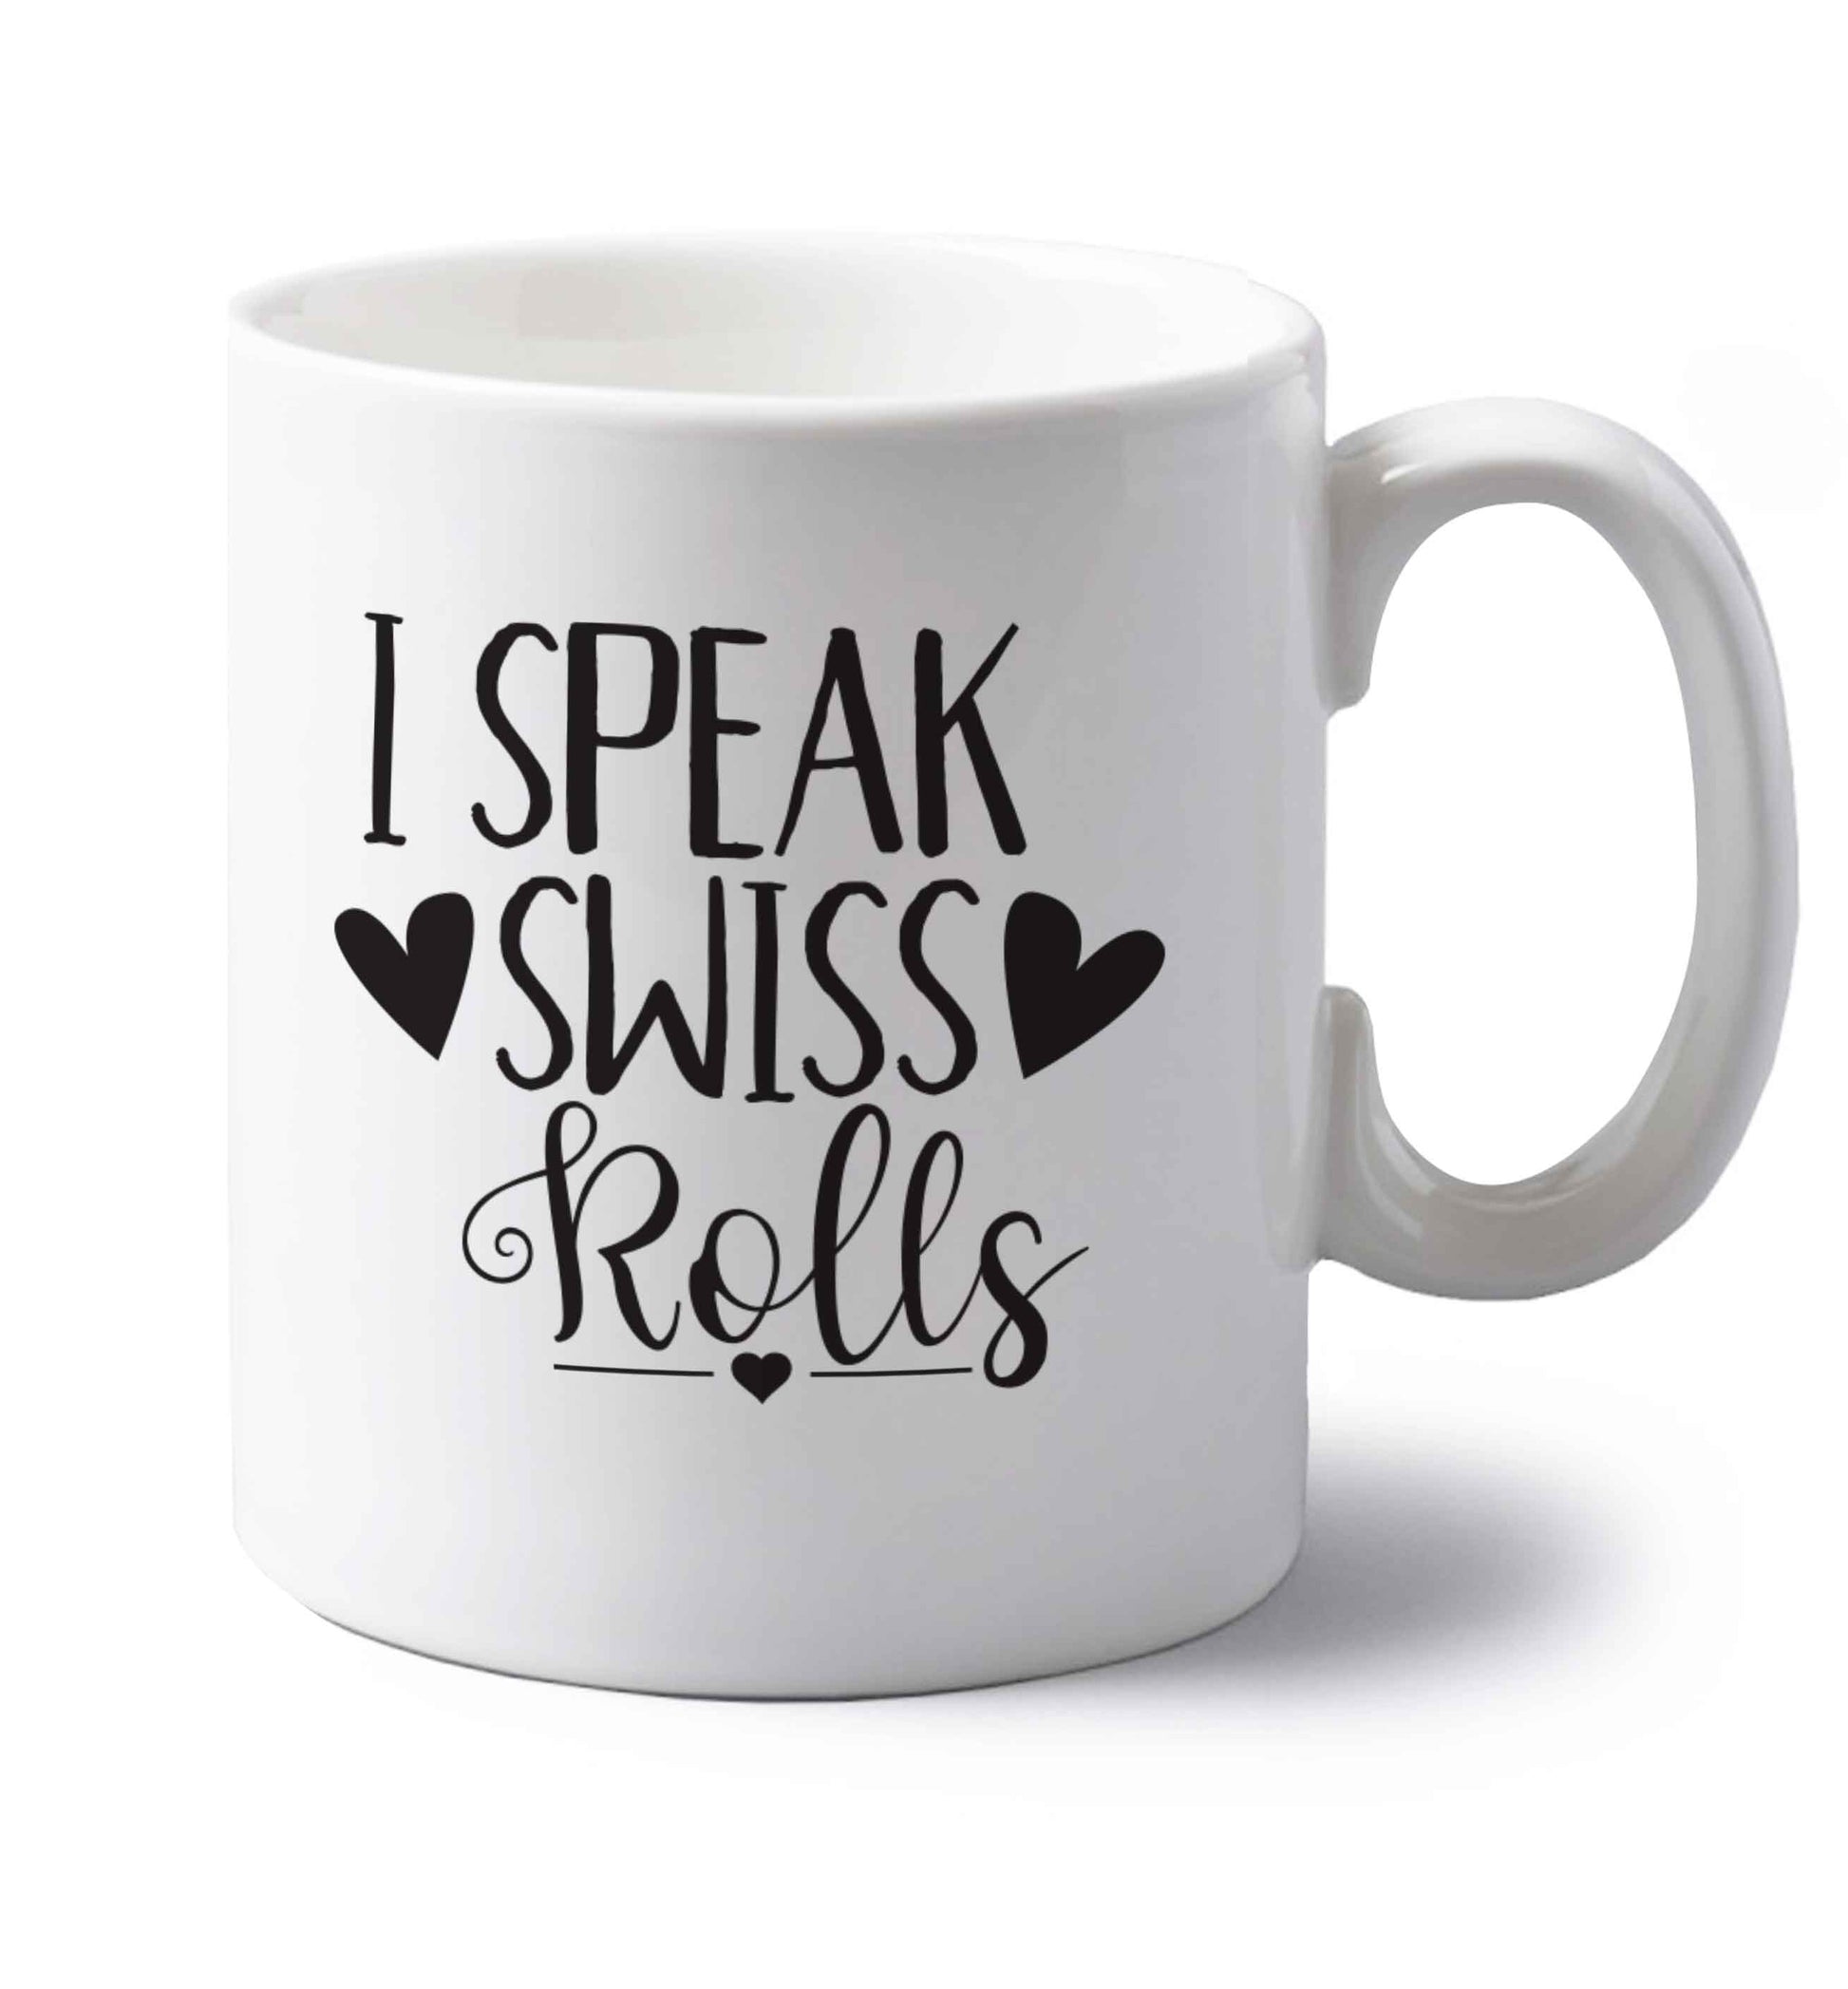 I speak swiss..rolls left handed white ceramic mug 